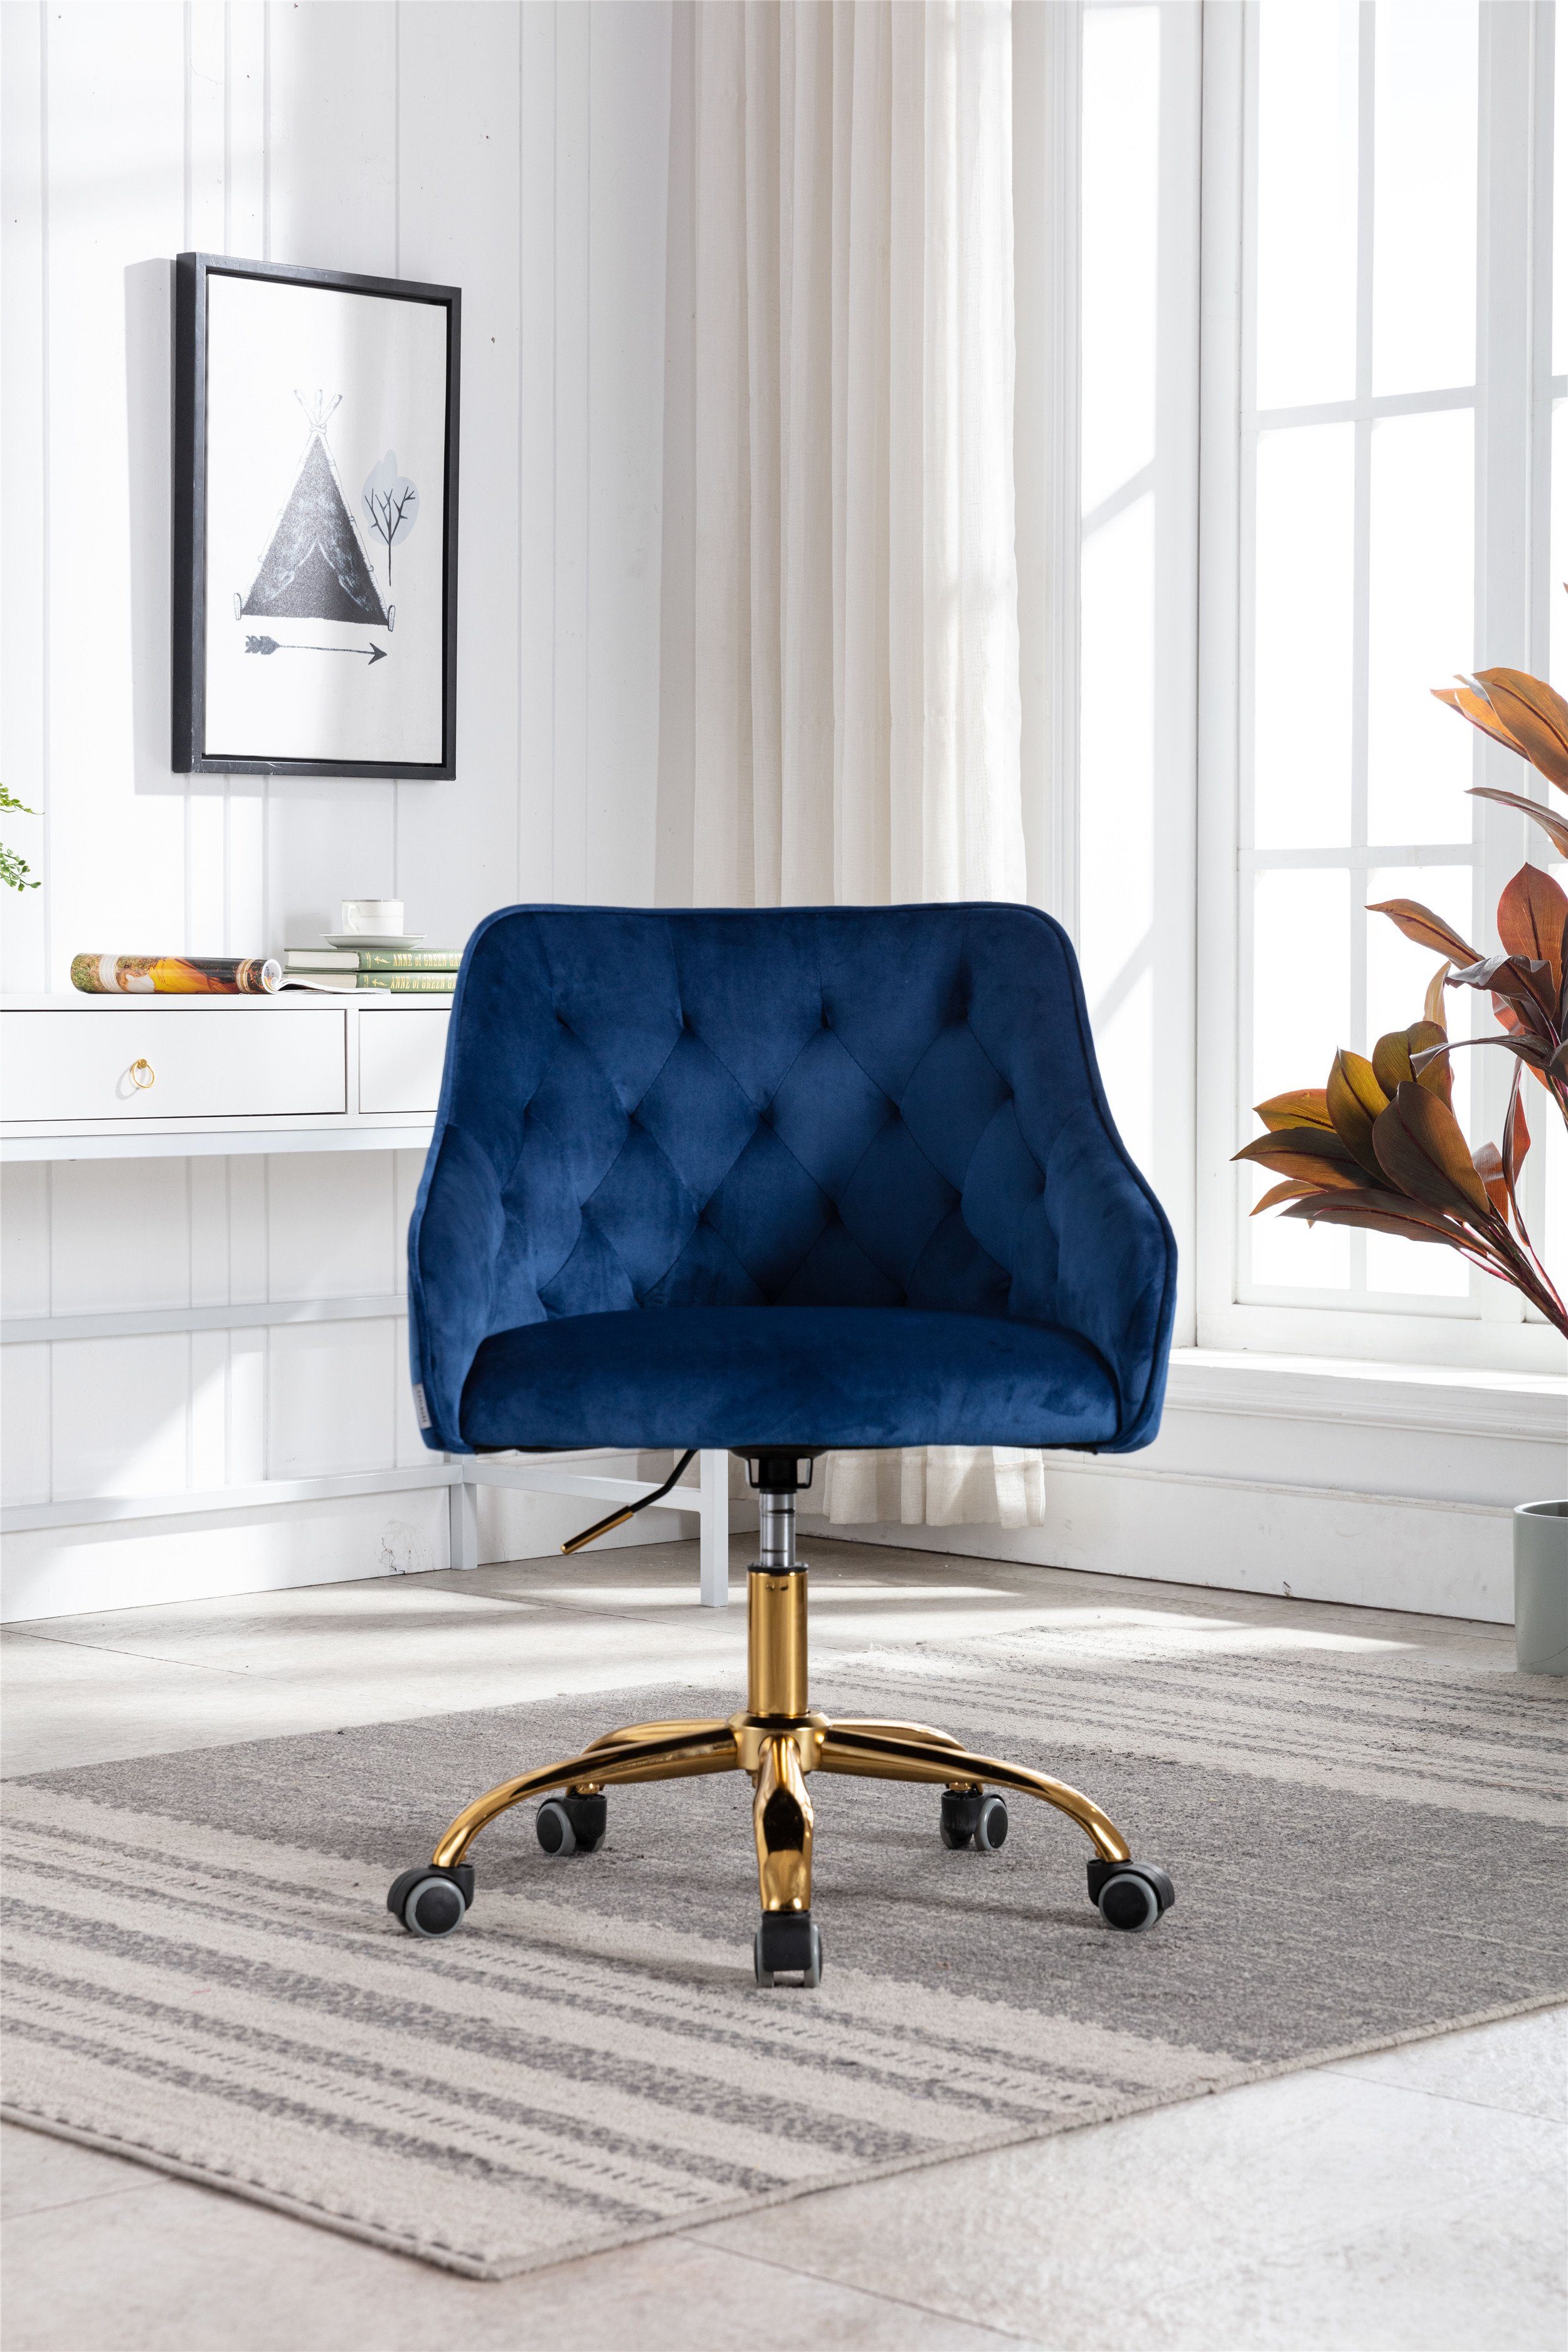 WISHDOR Stuhl Samt Bürostuhl, Schminkstuhl, 360° drehbar (Hübscher schicker Stuhl, goldener Bürostuhl), Goldener Bürostuhl blau | Stühle